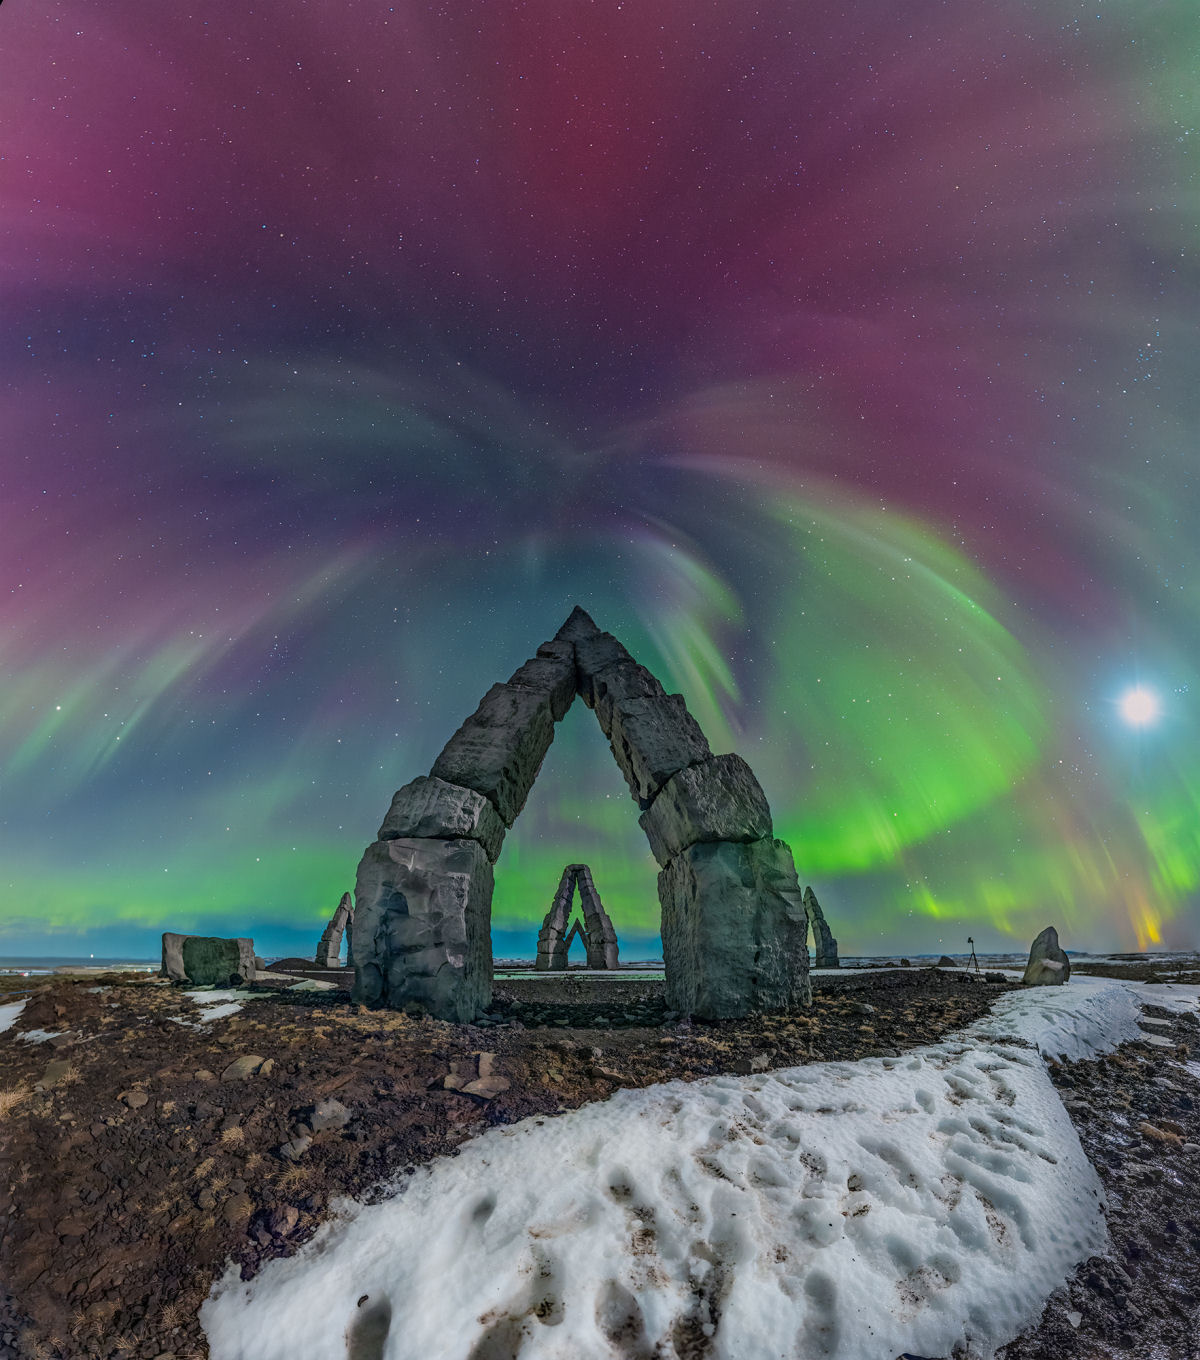 Fotos vívidas seguem a Aurora Boreal no céu noturno da Islândia 06